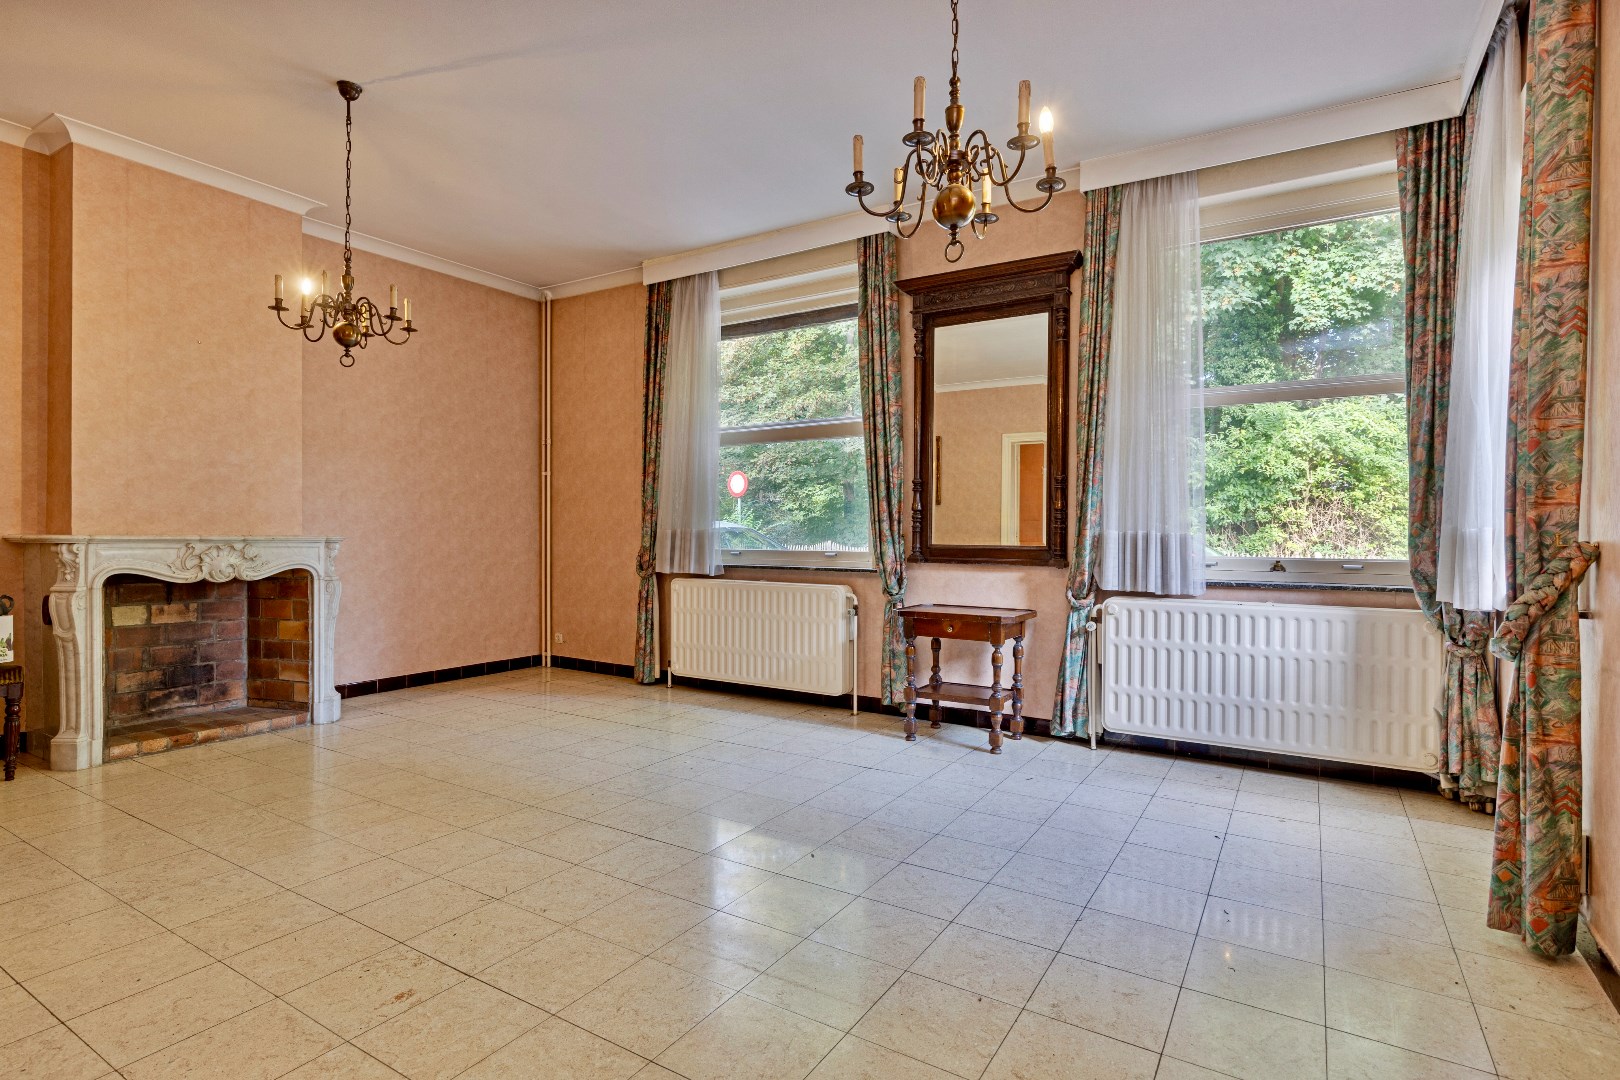 Maison a vendre | option - sous réserve À Buizingen